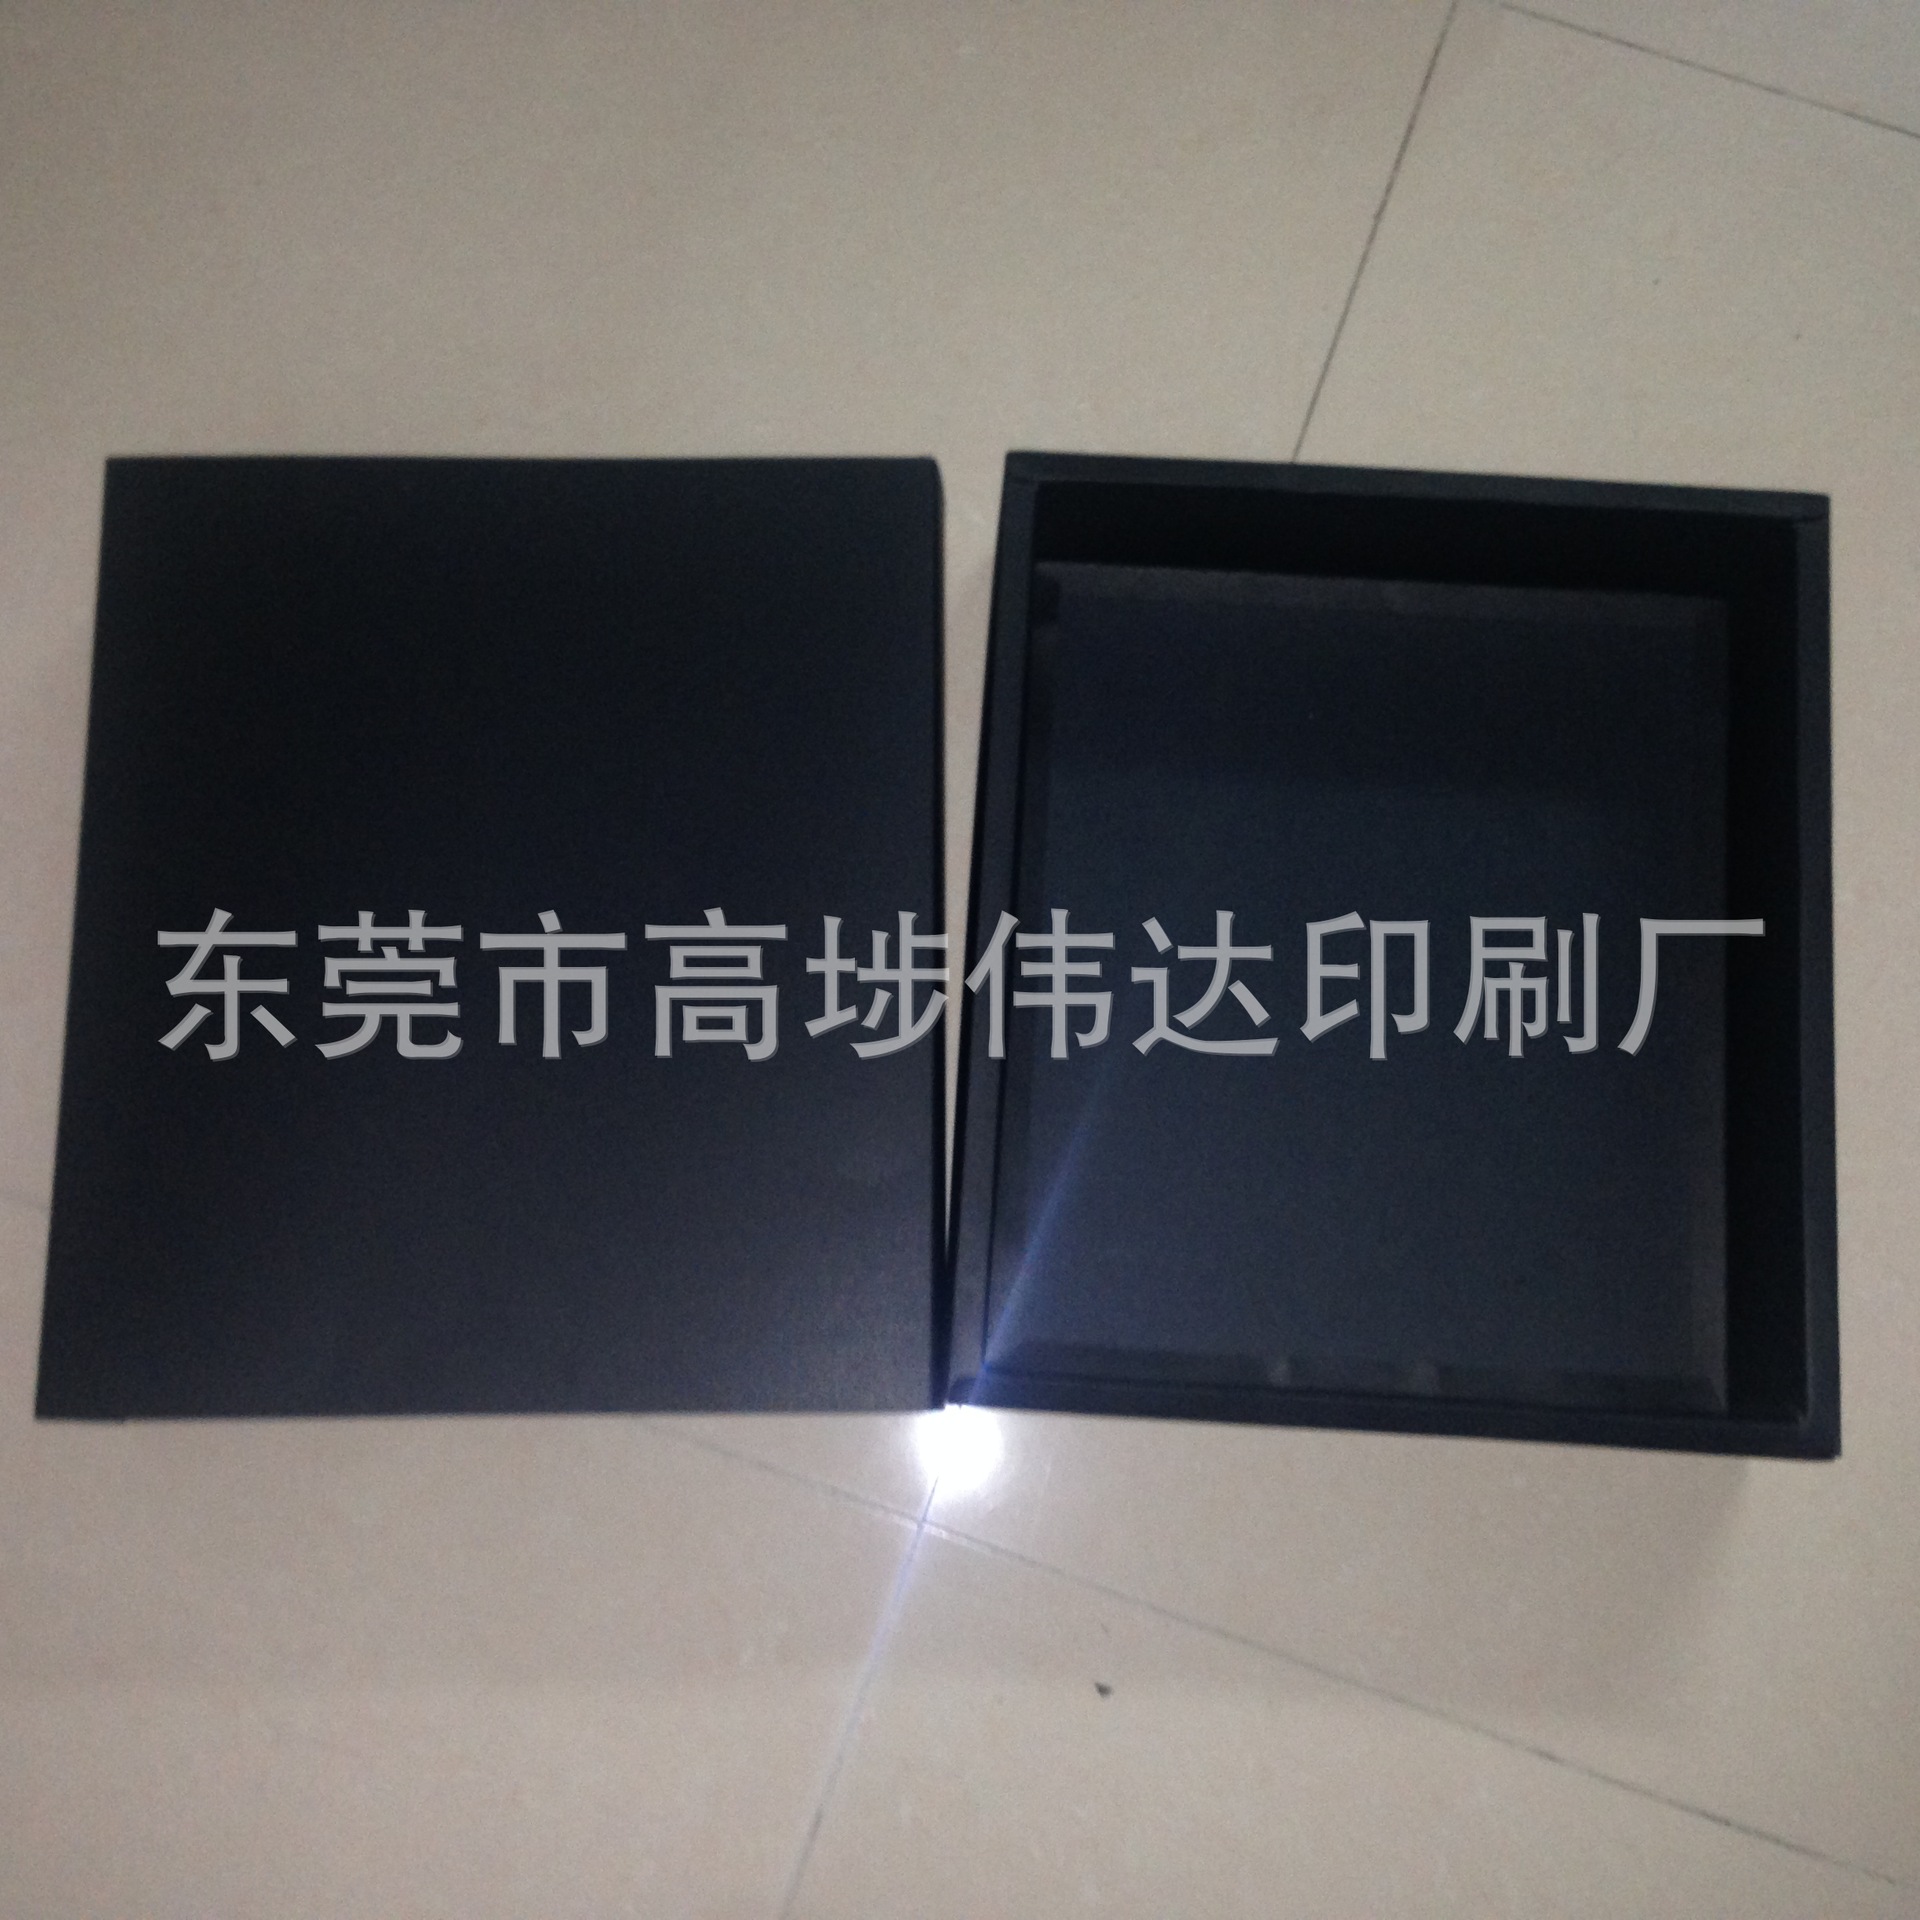 包装盒 抽屉盒 印刷黑色包装盒 黑卡抽屉盒印刷 东莞包装定做